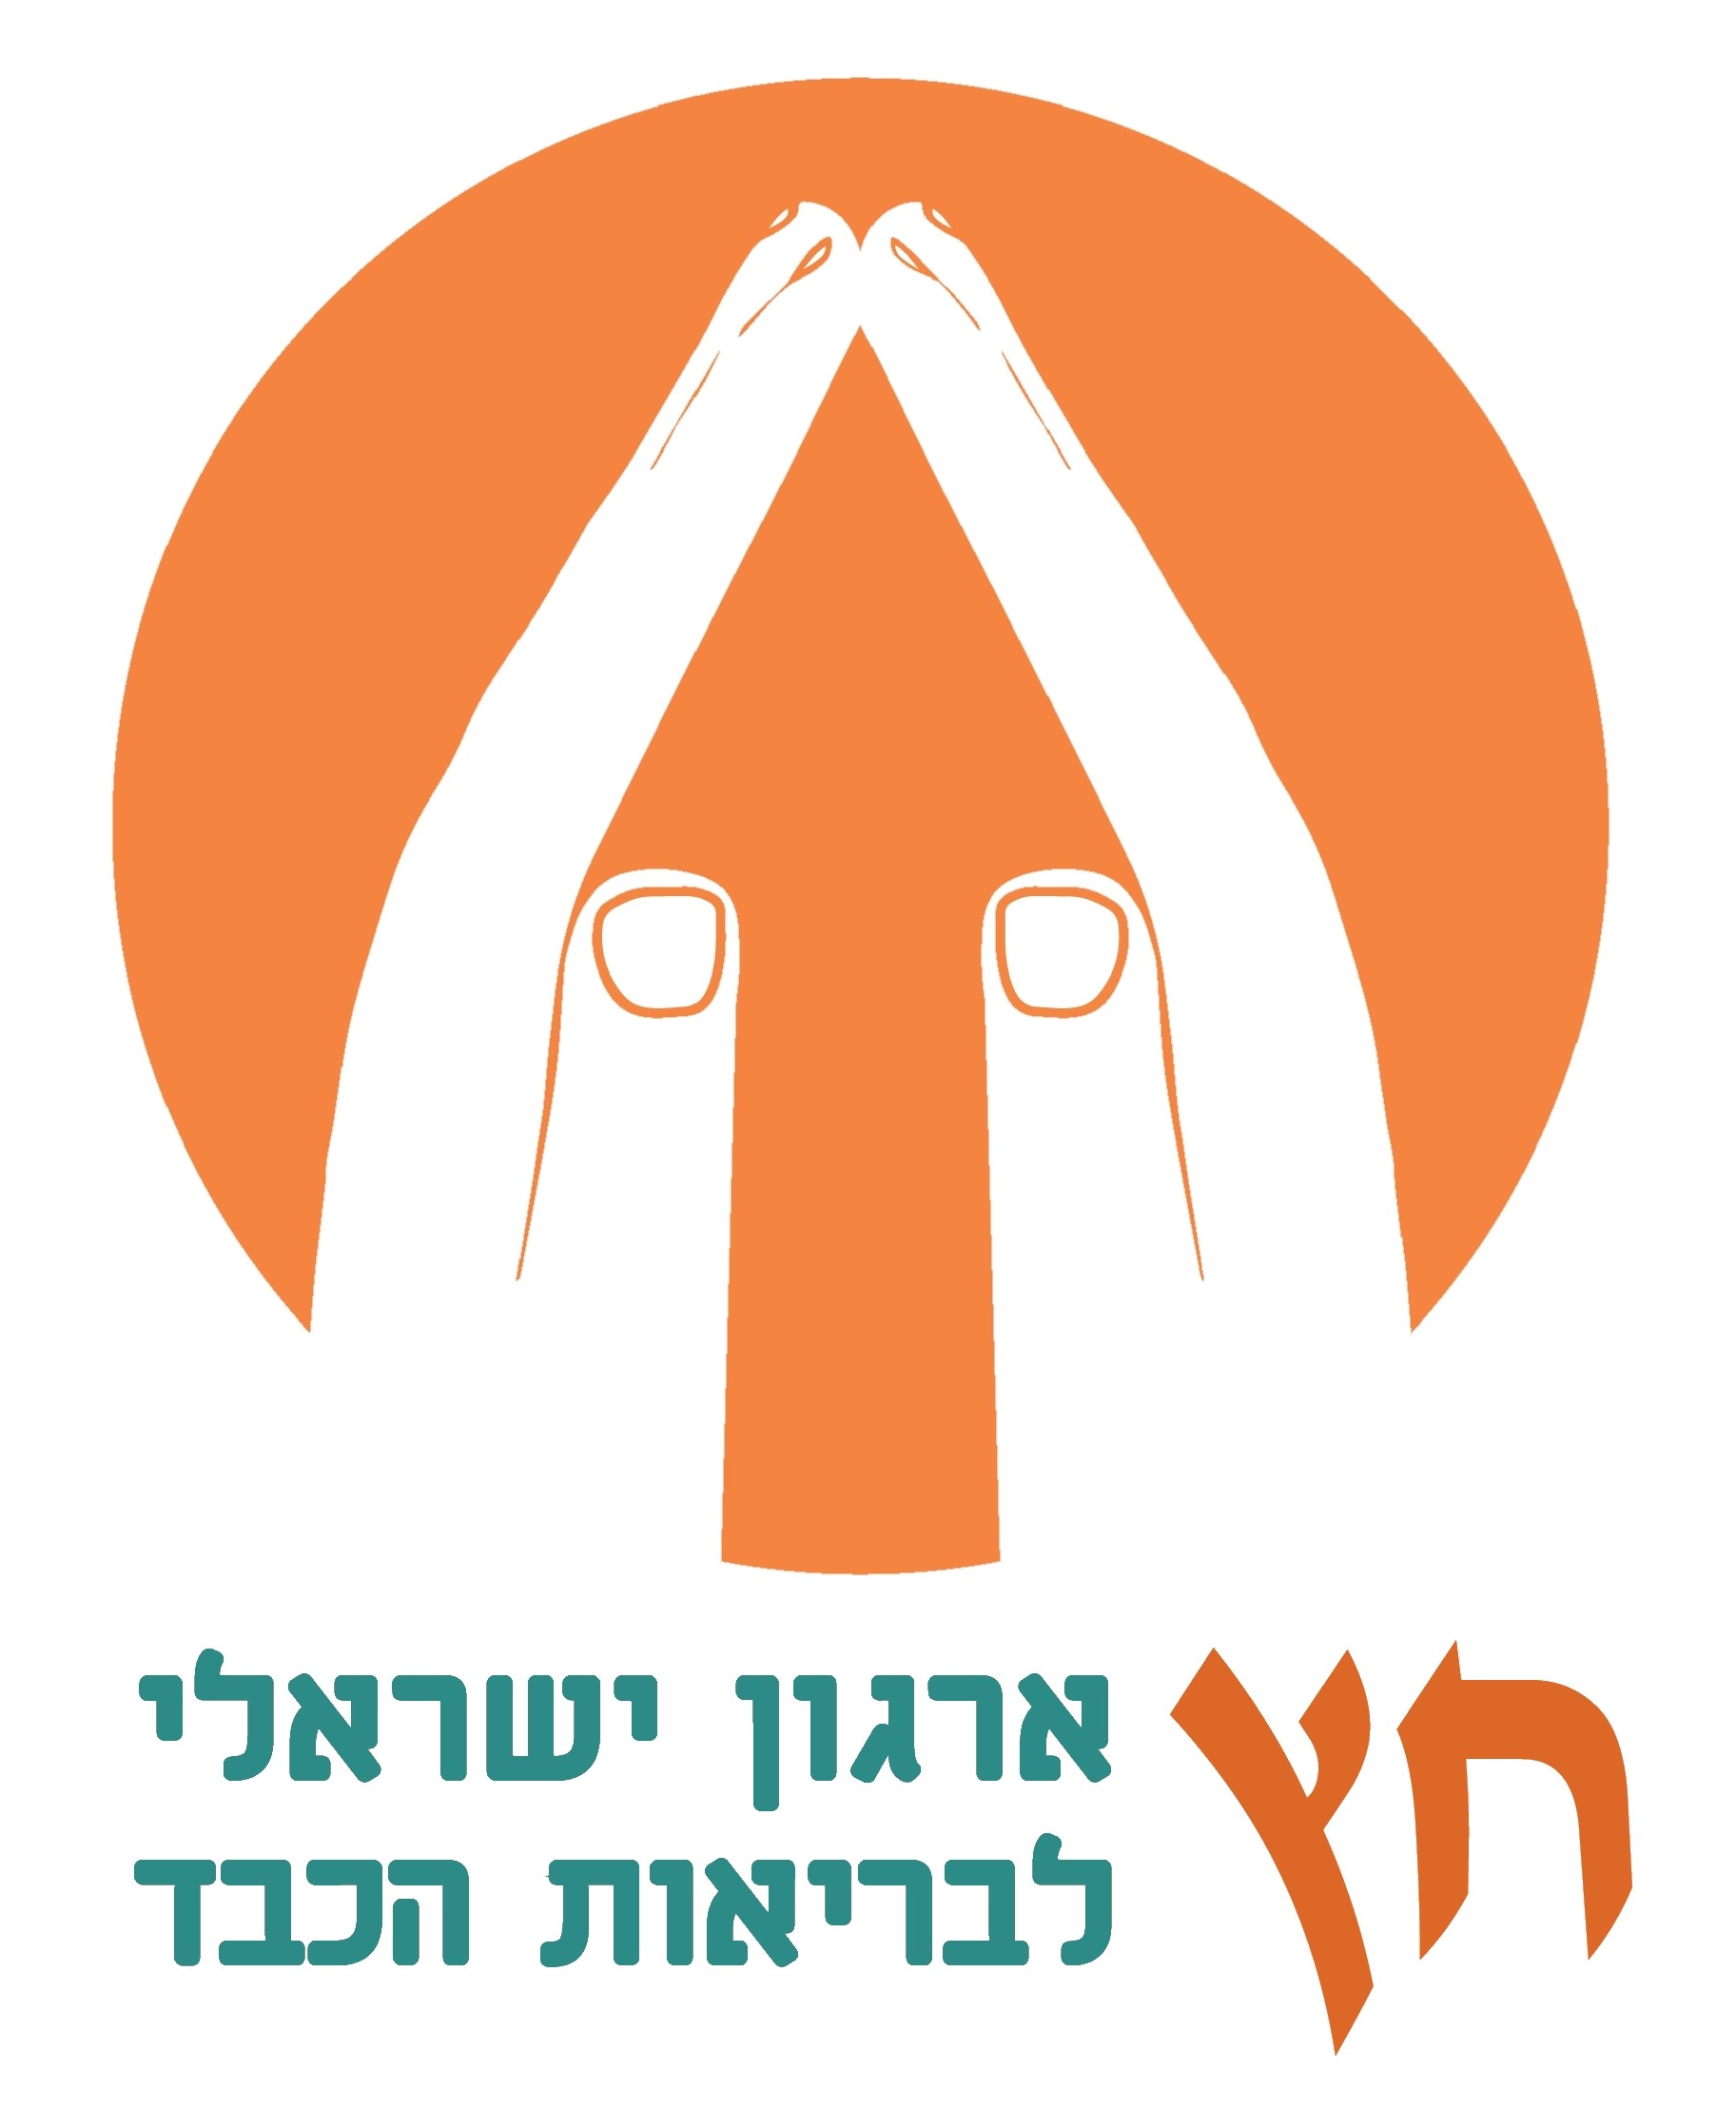 Hetz Israeli Liver Patient Association